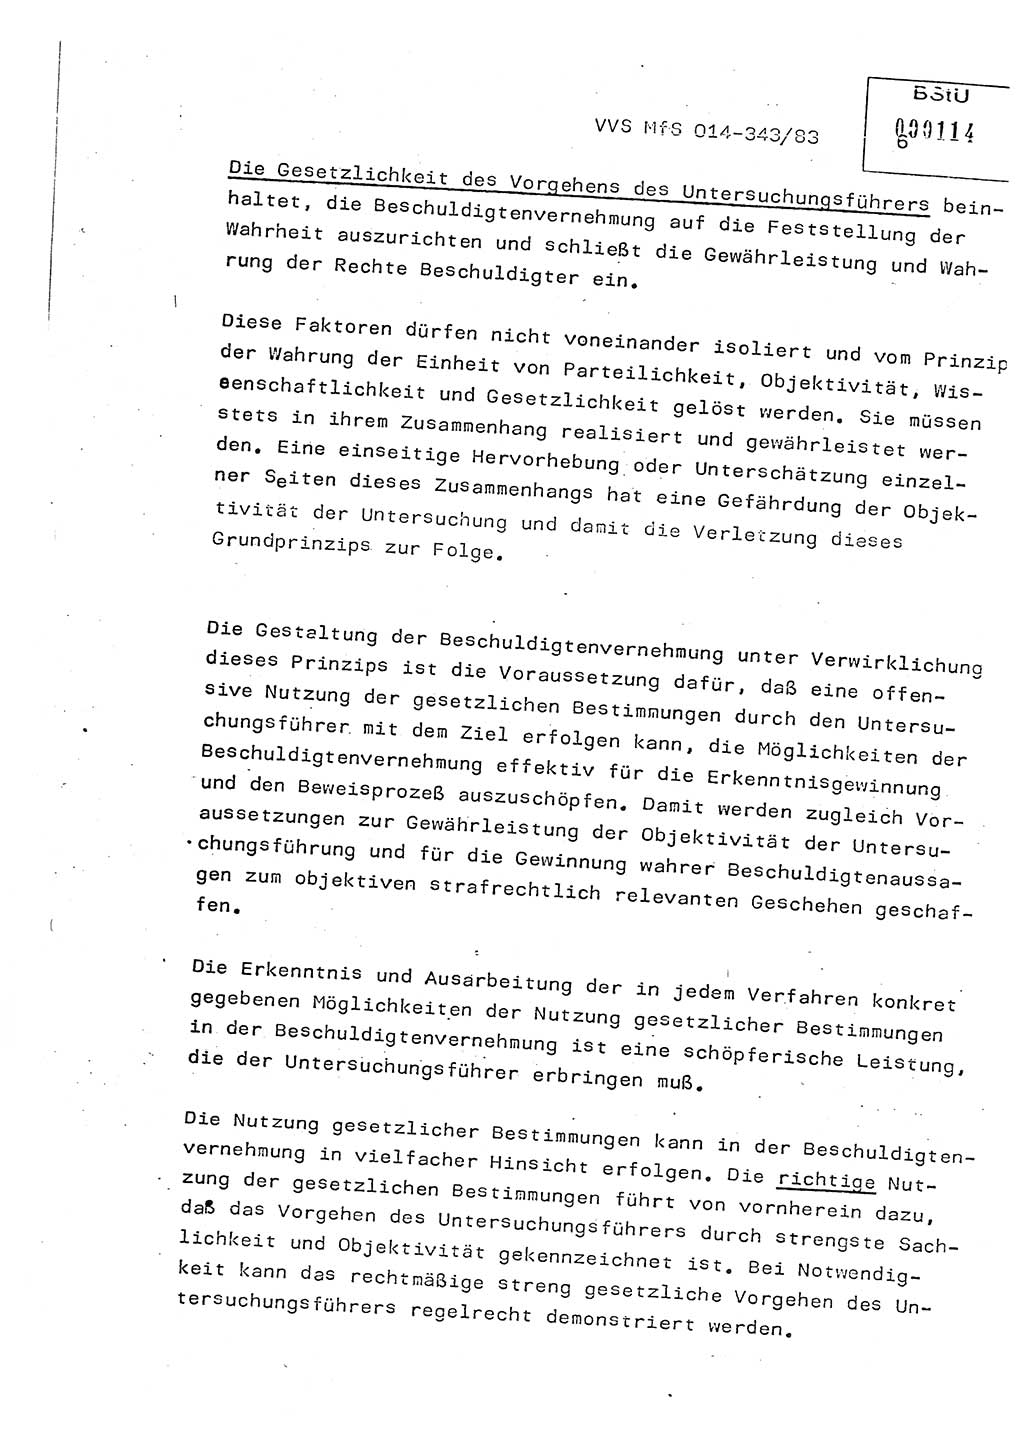 Lektion Ministerium für Staatssicherheit (MfS) [Deutsche Demokratische Republik (DDR)], Hauptabteilung (HA) Ⅸ, Vertrauliche Verschlußsache (VVS) o014-343/83, Berlin 1983, Seite 6 (Lekt. MfS DDR HA Ⅸ VVS o014-343/83 1983, S. 6)